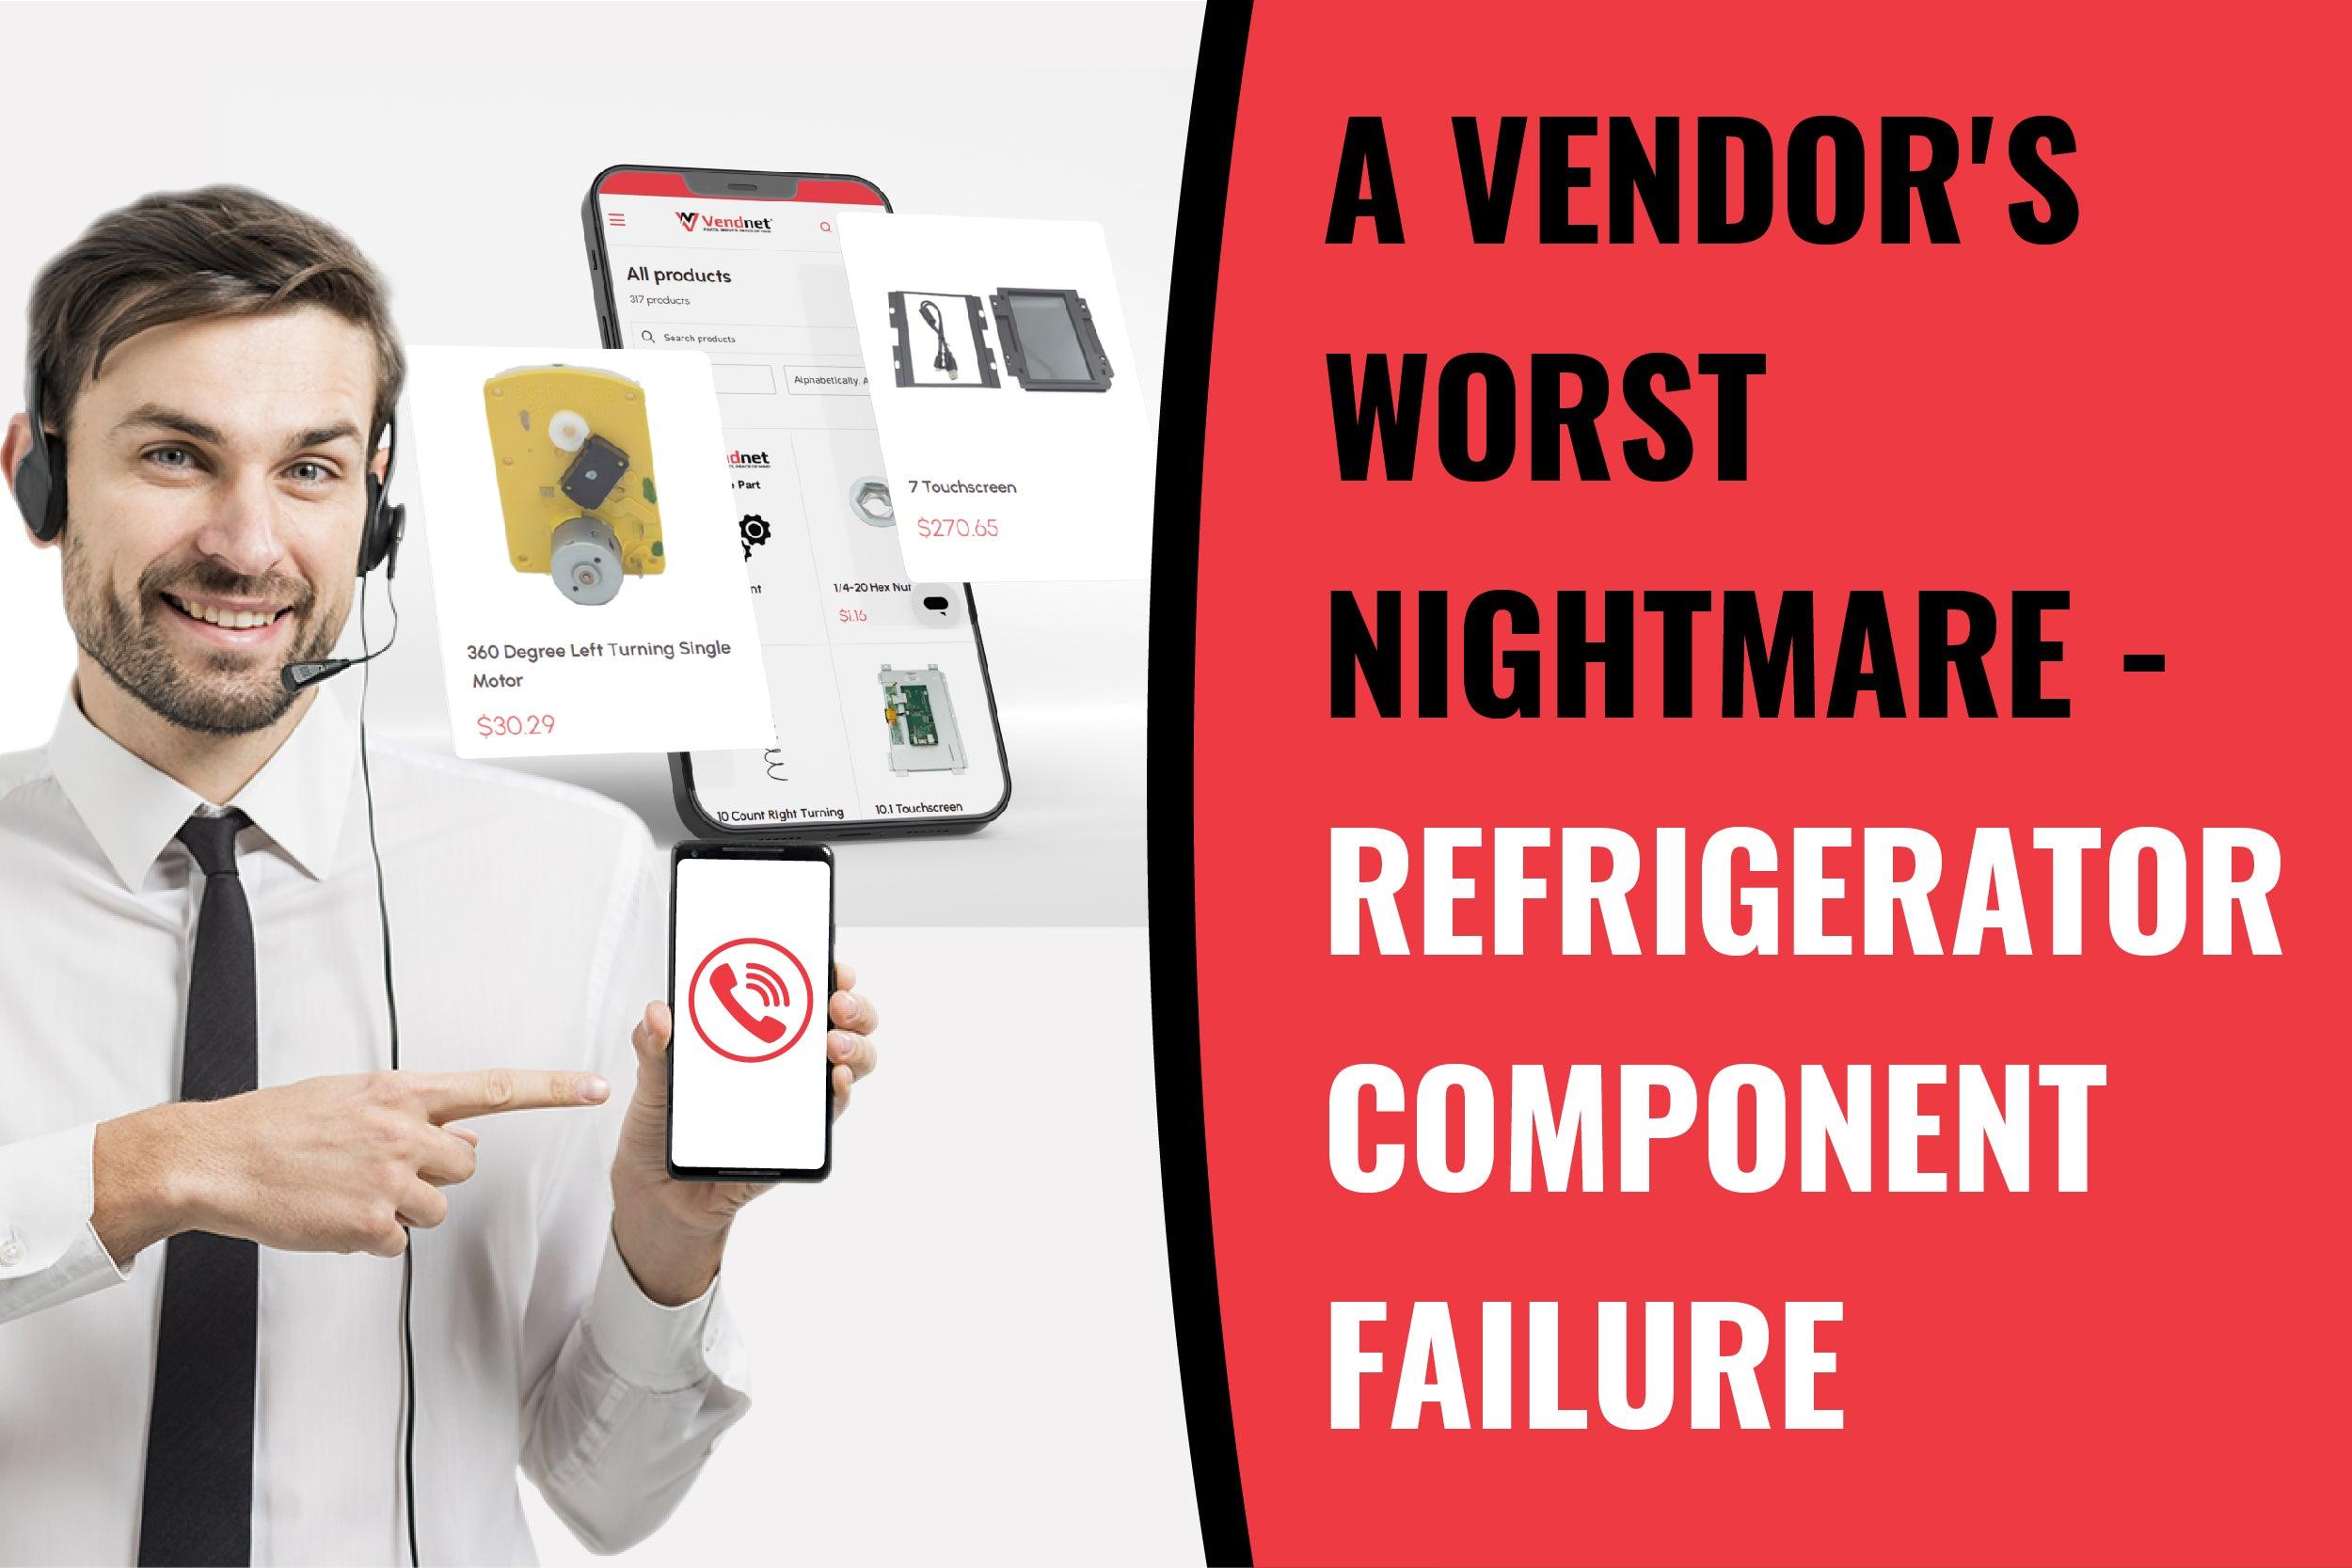 Vending Support: A Vendor's Worst Nightmare - Refrigerator Component Failure - Vendnet